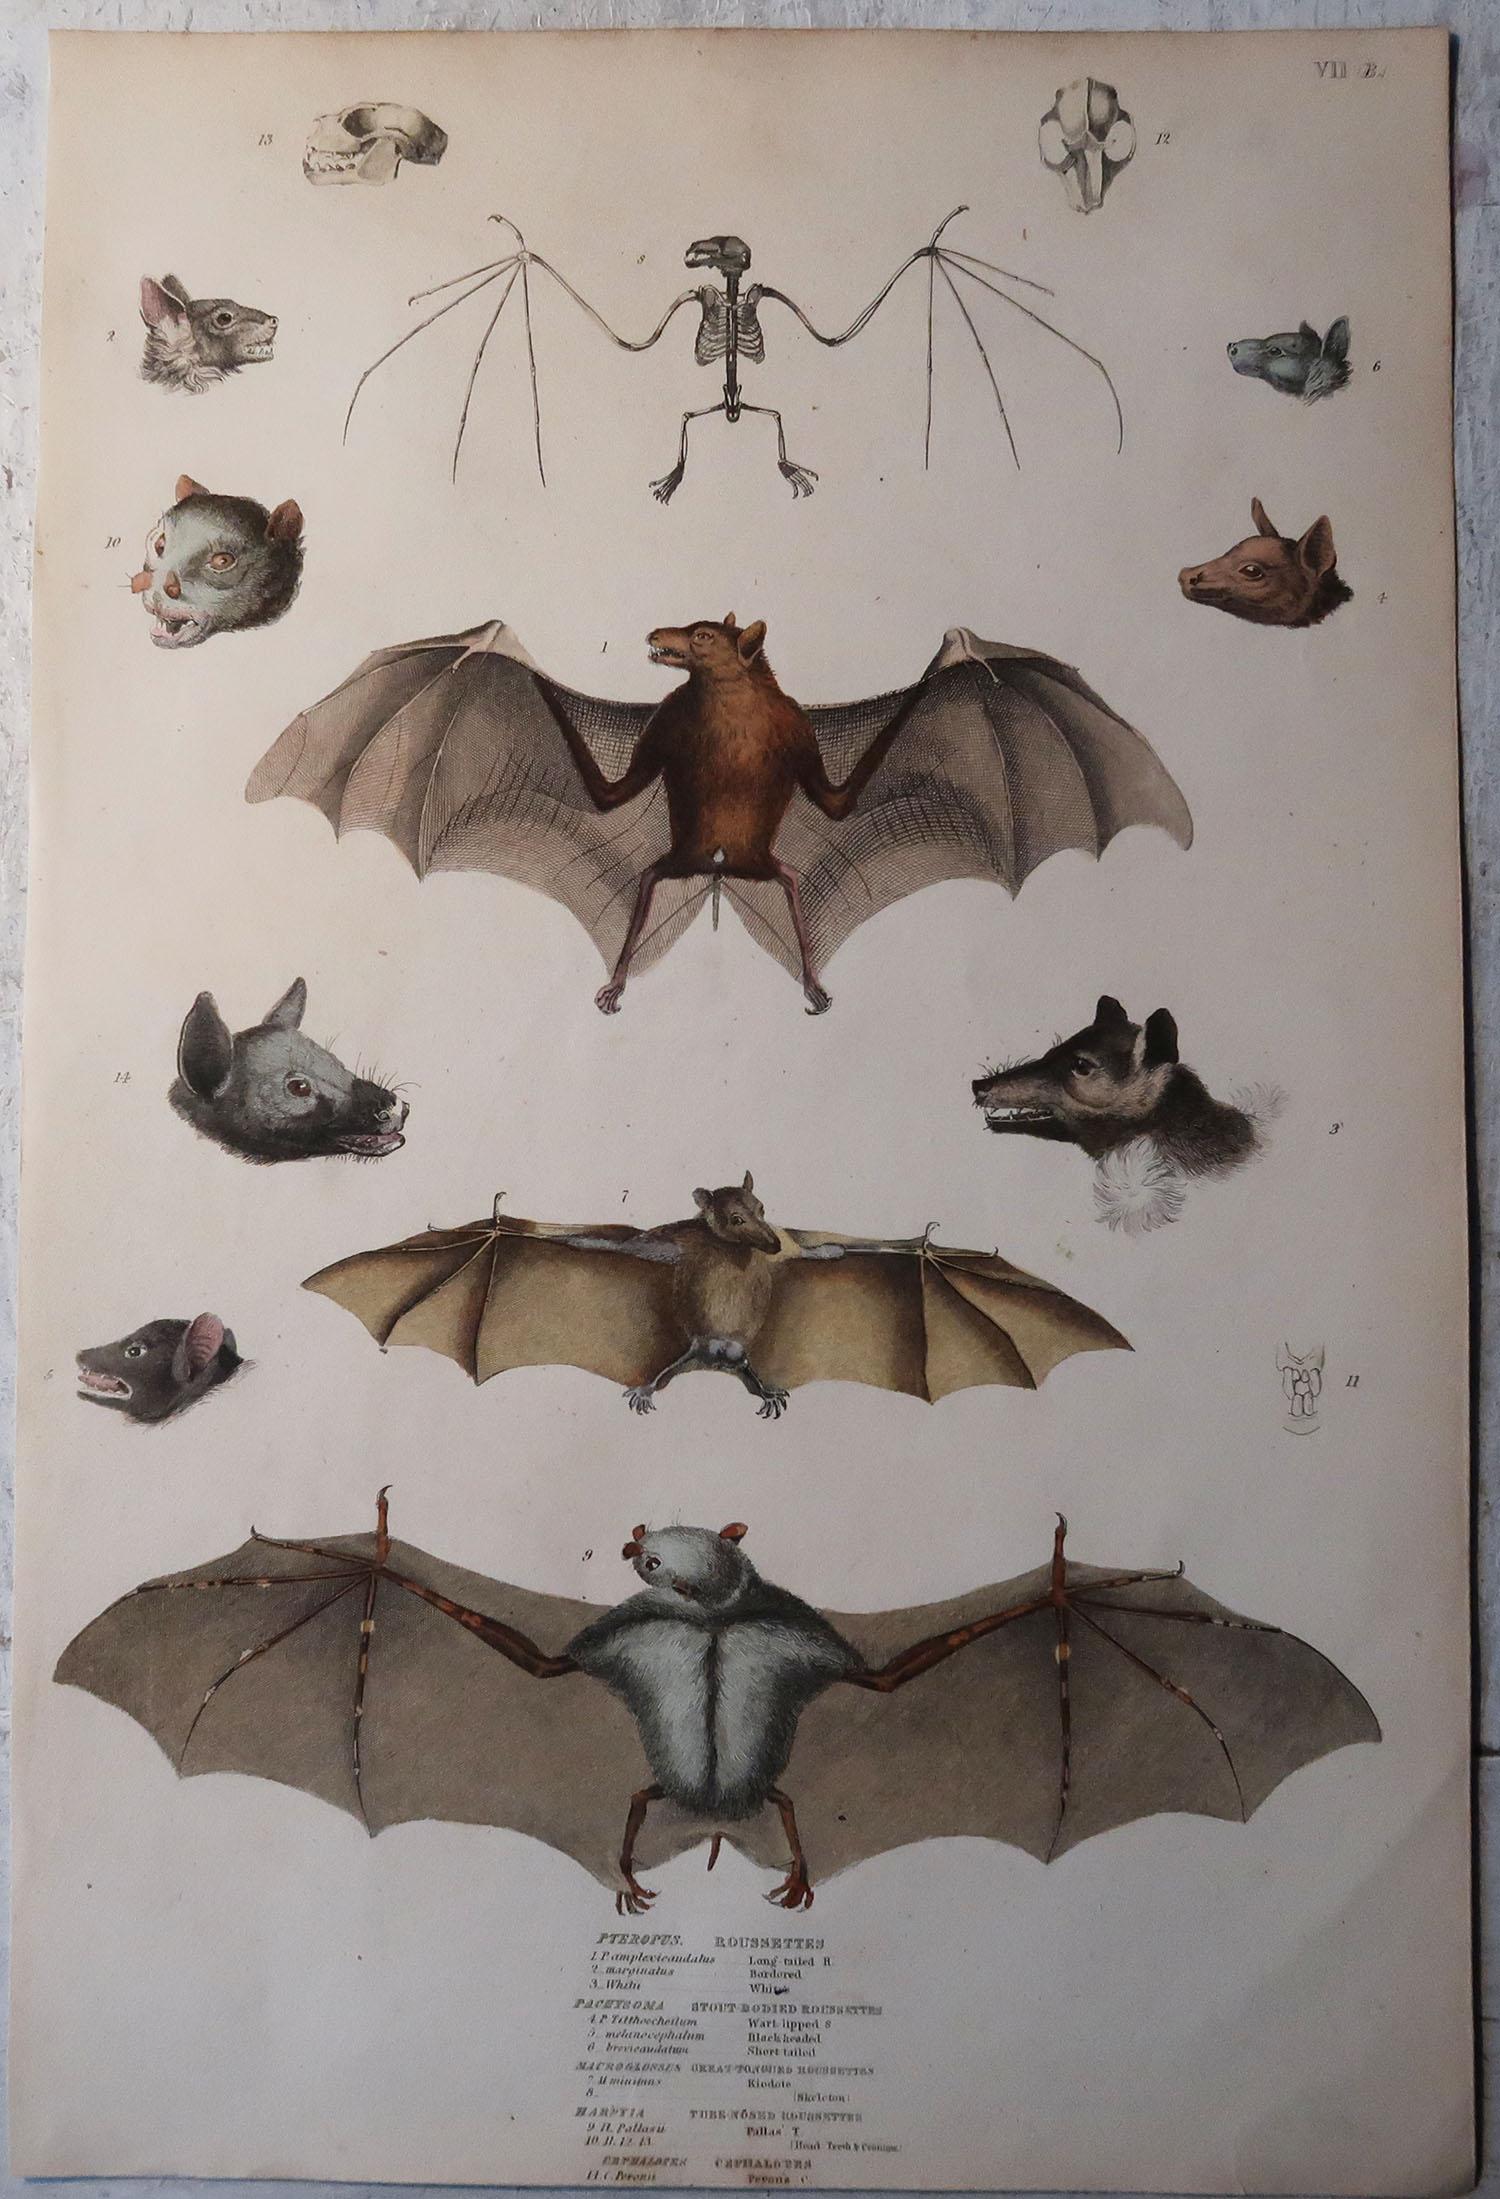 Folk Art Set of 4 Large Original Antique Natural History Prints, Bats, circa 1835